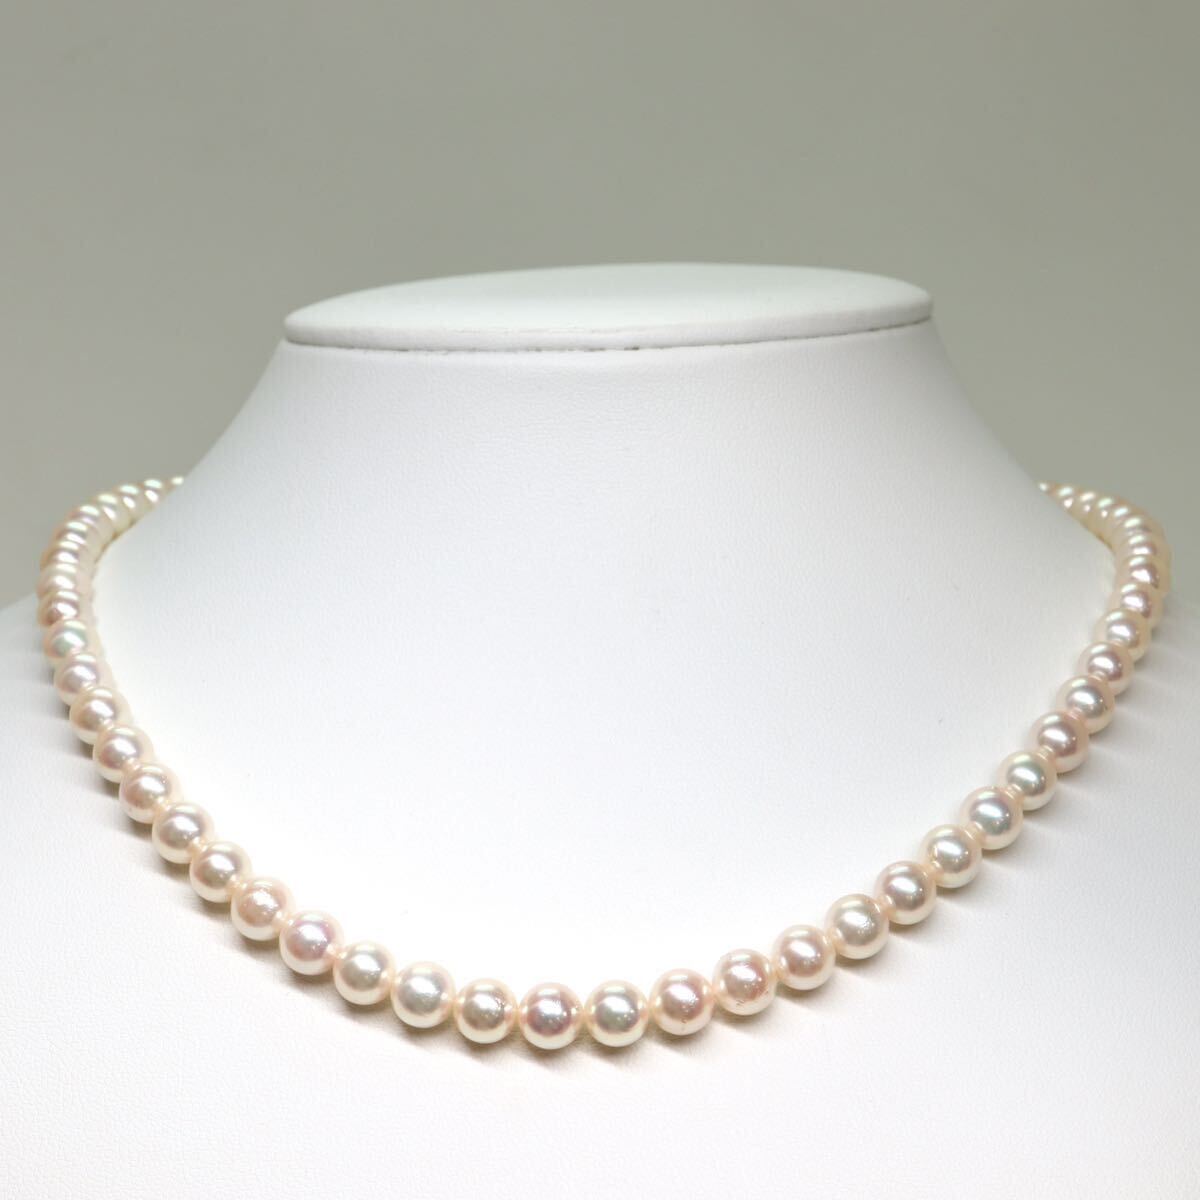 テリ良し!!《アコヤ本真珠ネックレス》A 約6.5-7.0mm珠 29.9g 約42.5cm pearl necklace ジュエリー jewelry CA0/DC0_画像2